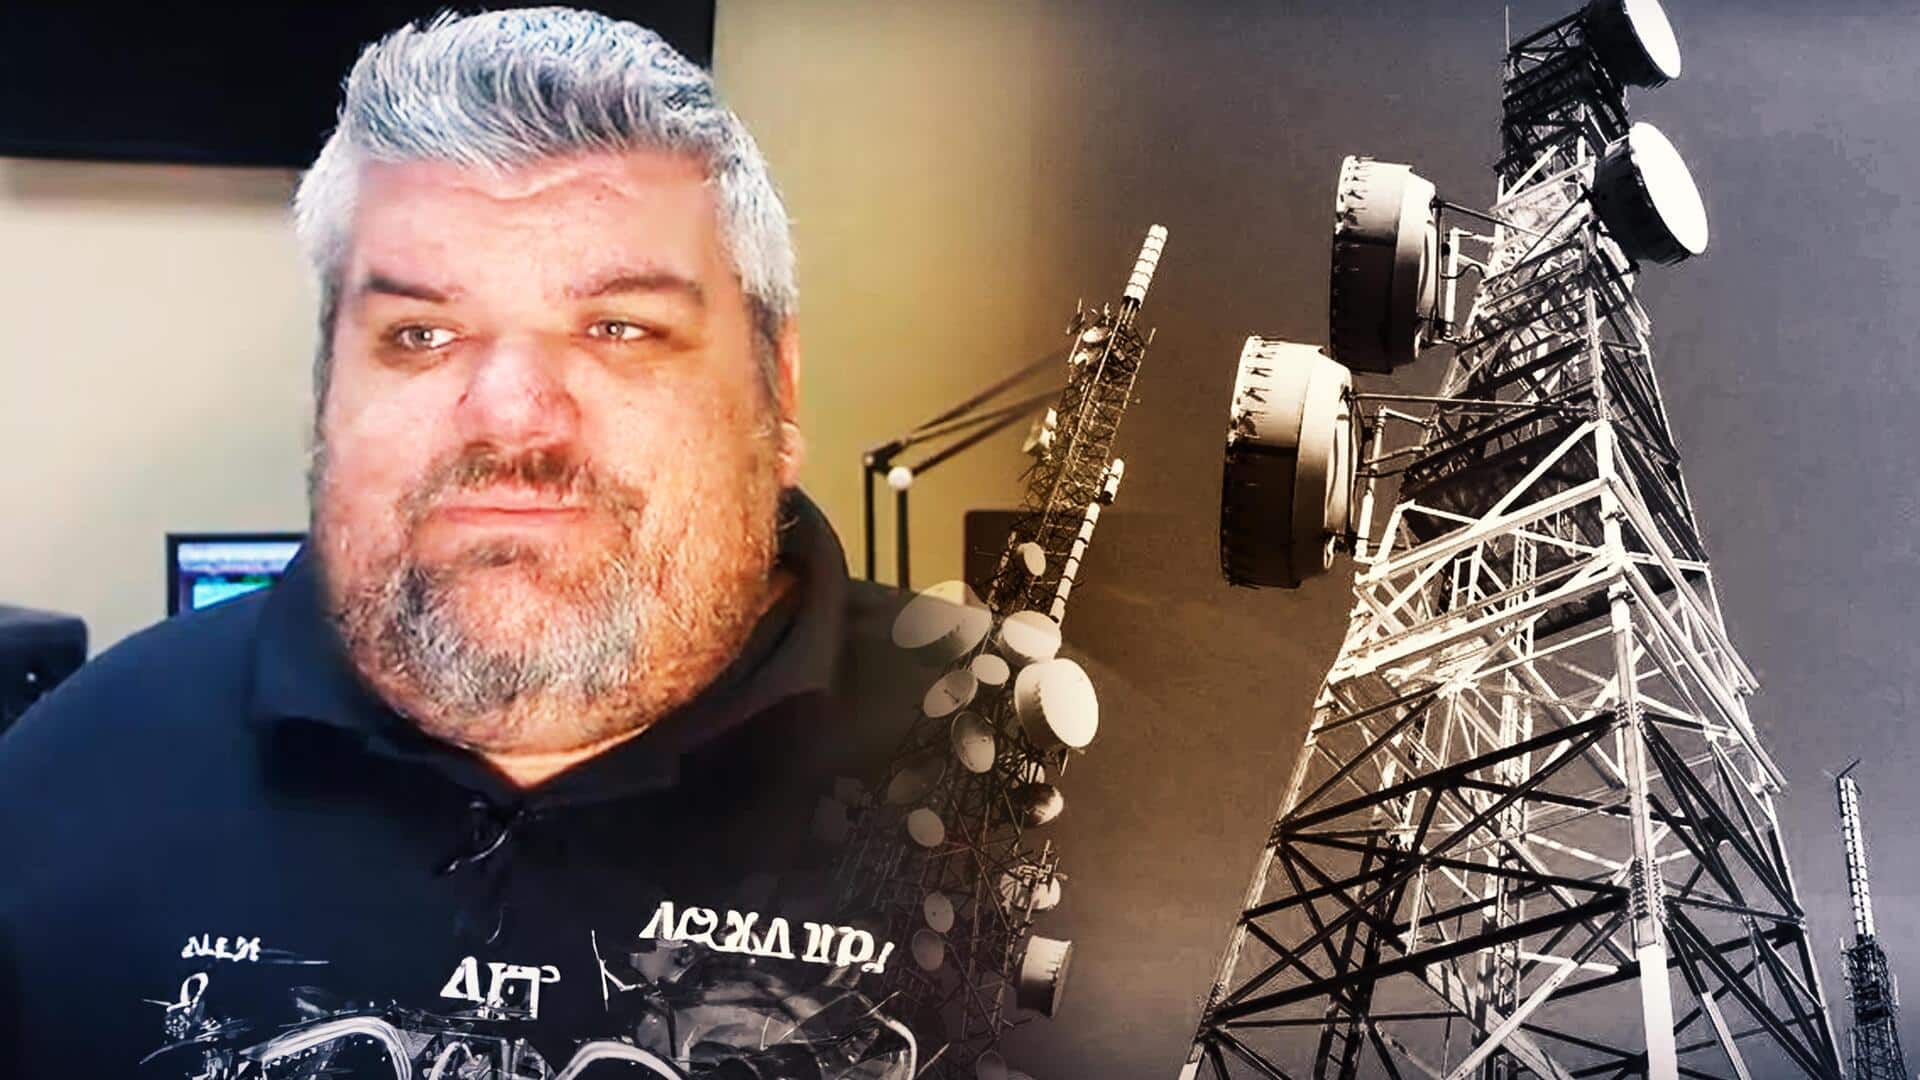 अमेरिका: रेडियो स्टेशन से चोरी हुआ 200 फुट ऊंचा टावर, लोग हैरान